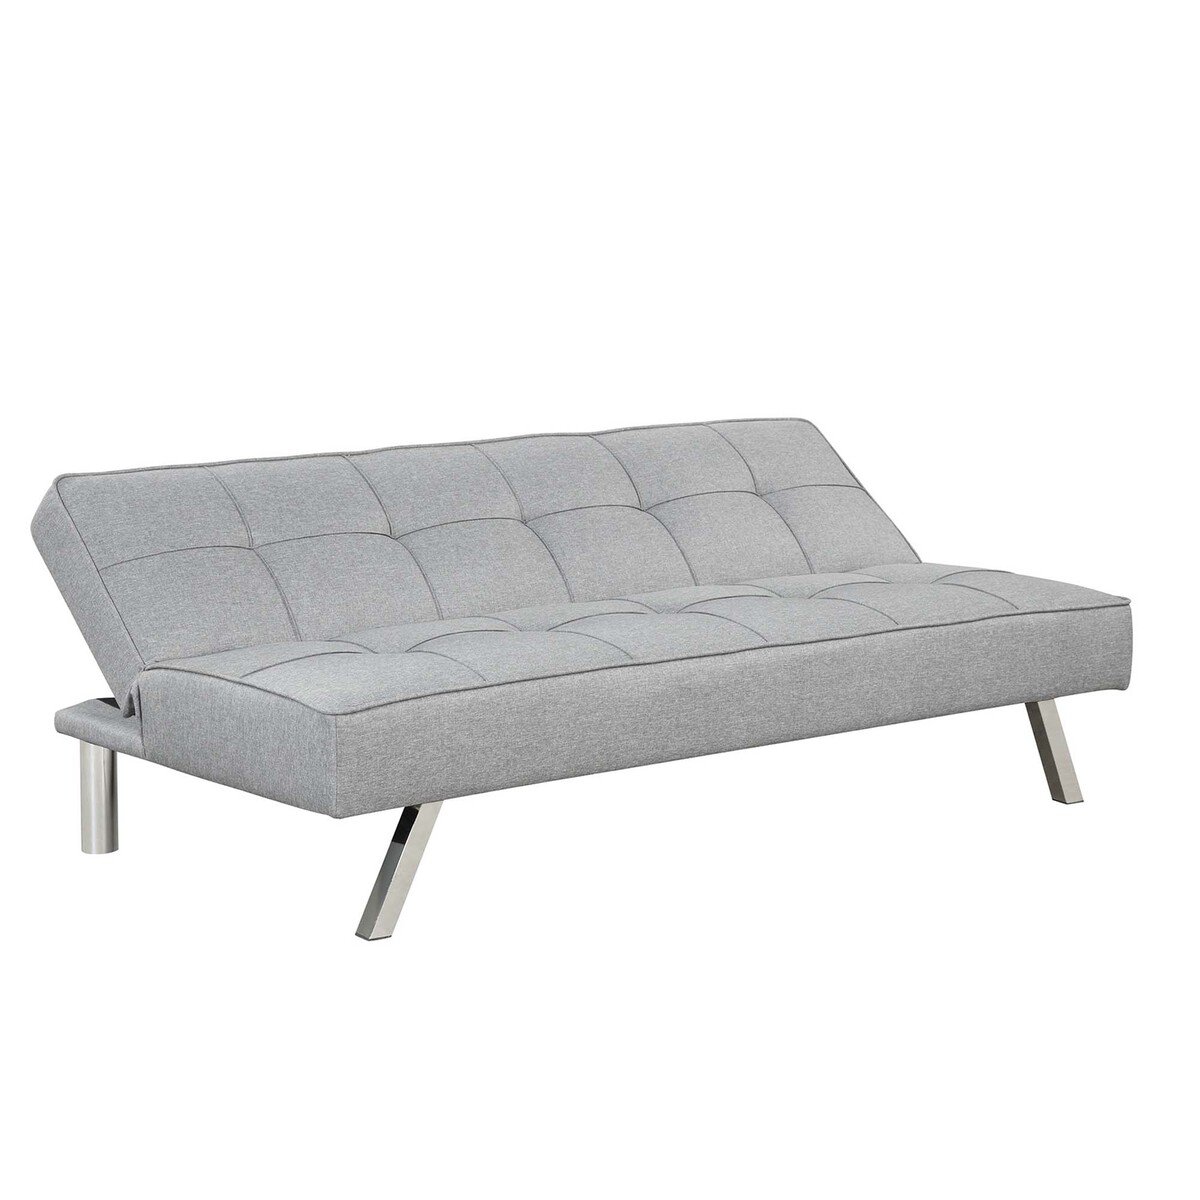 Maple Leaf Fabric Sofa Bed SF7809 Grey